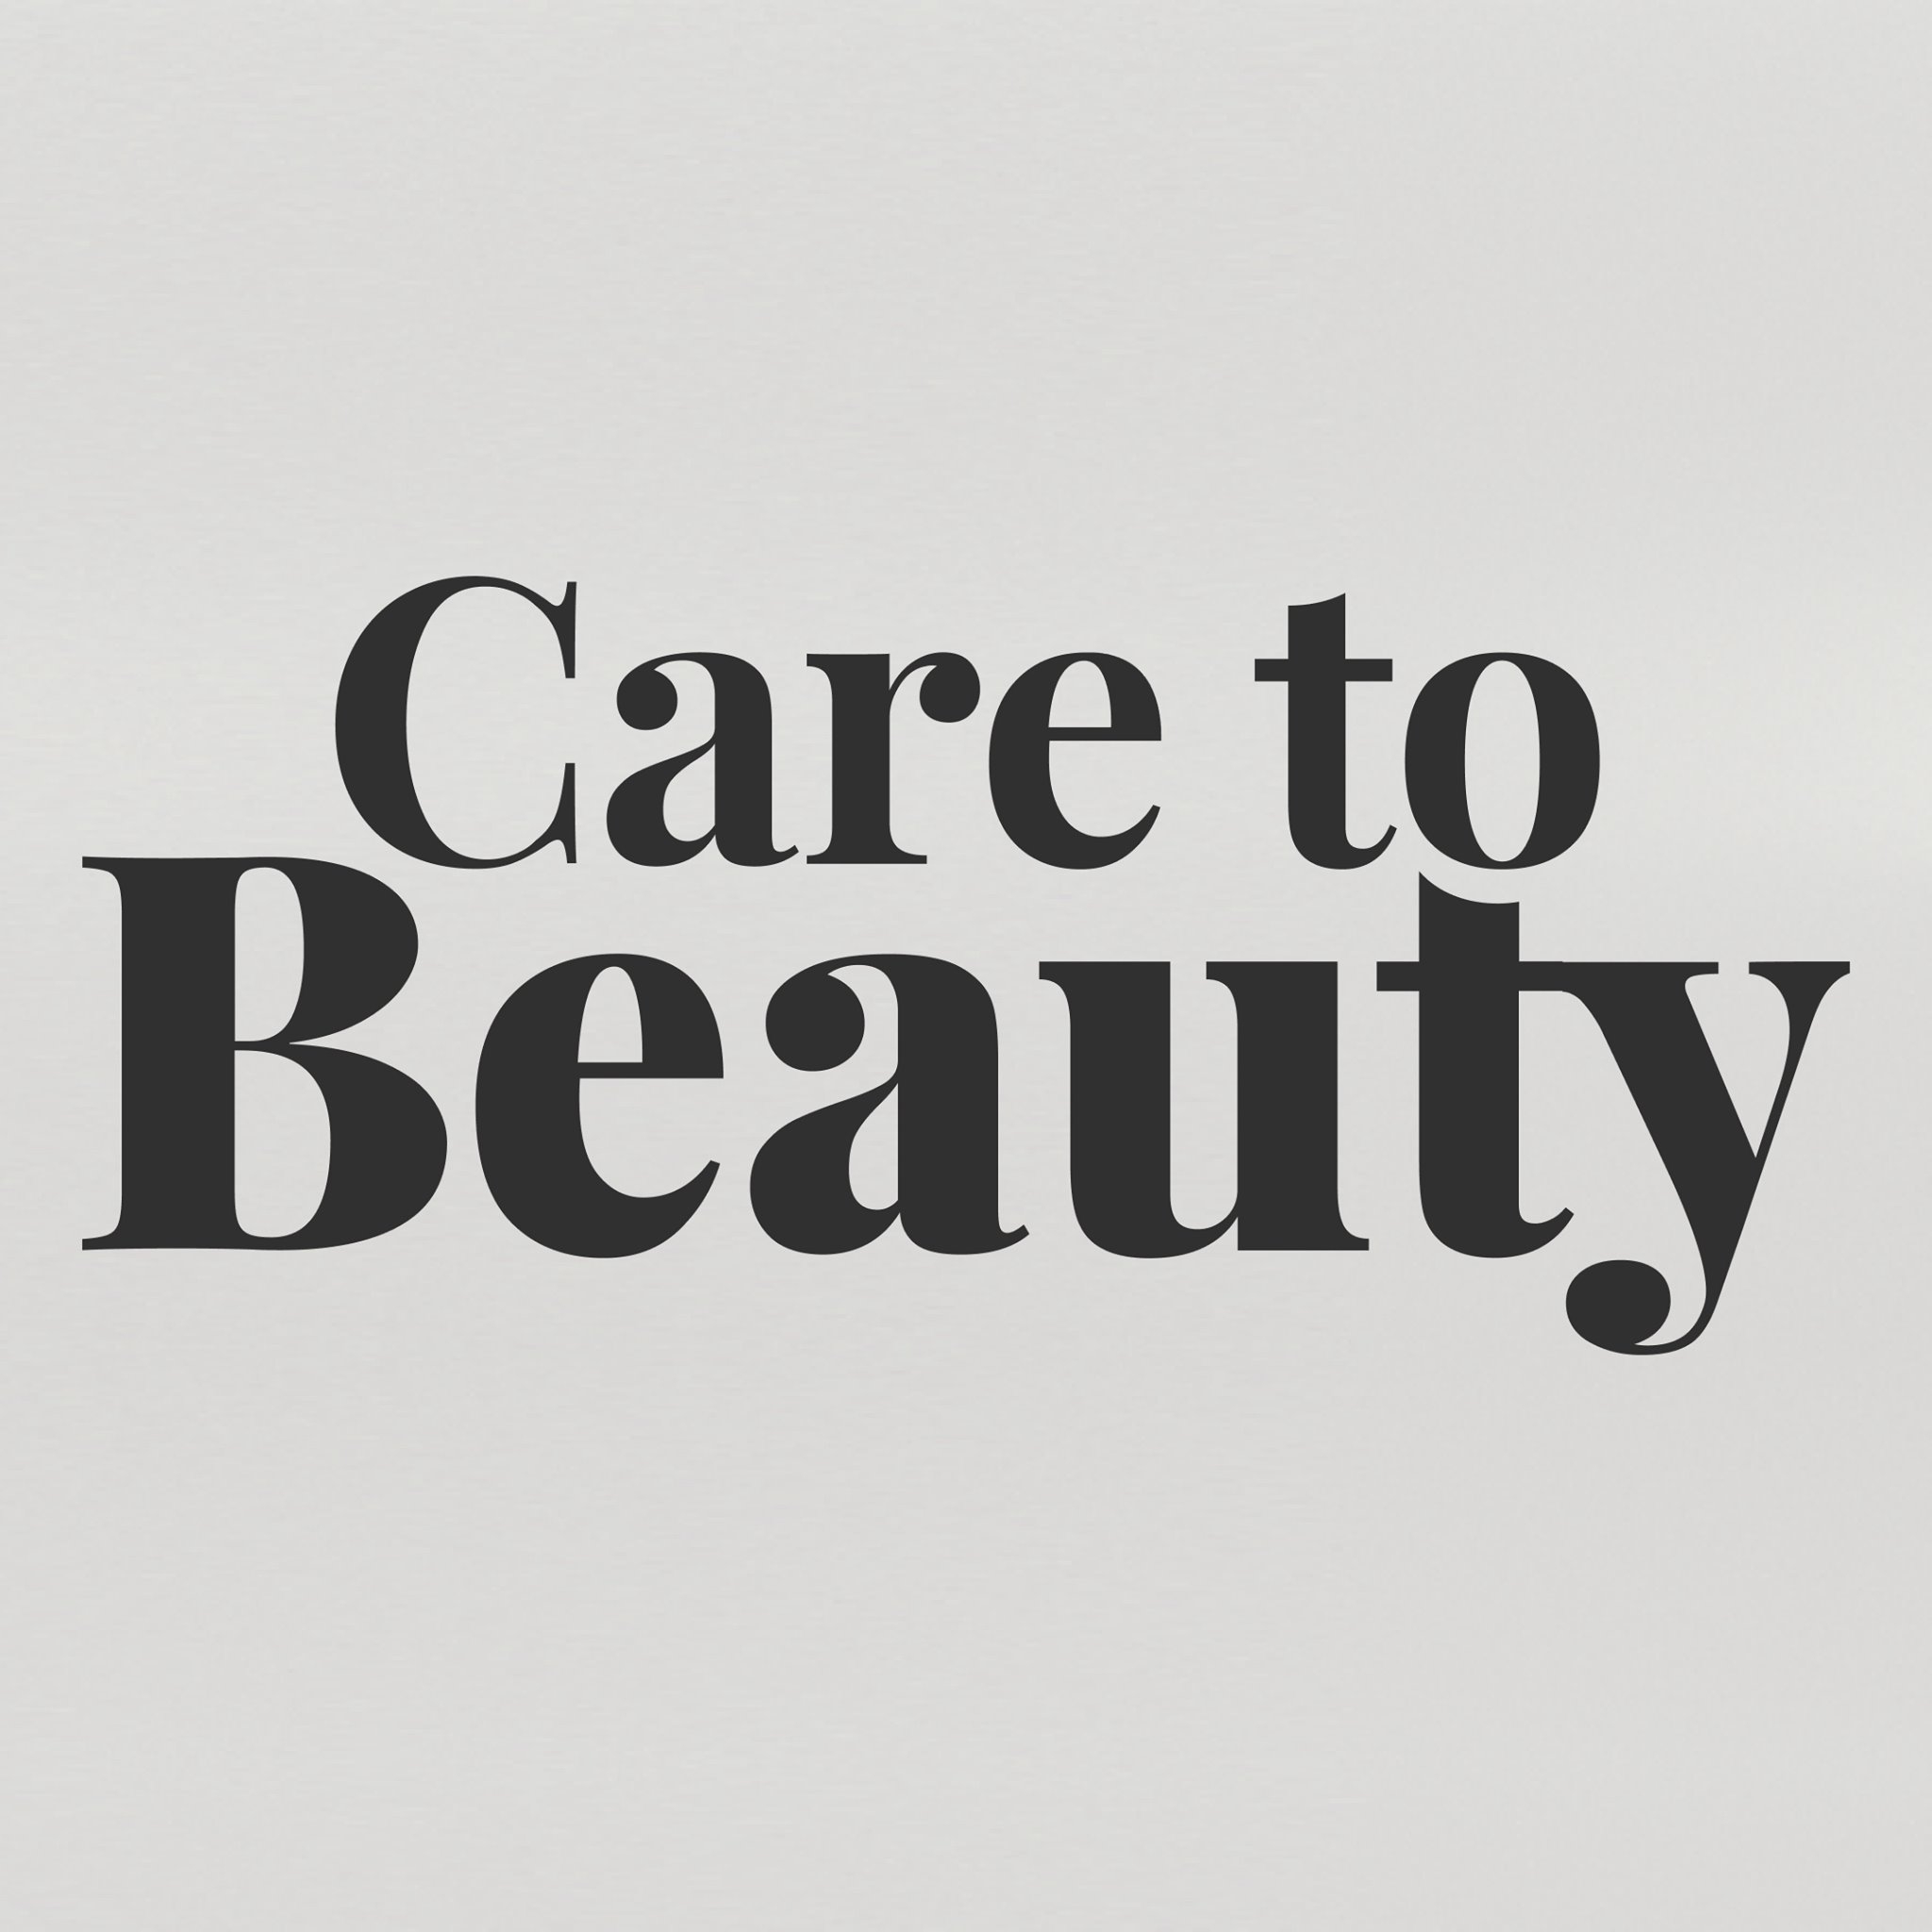 Company logo of Care to Beauty